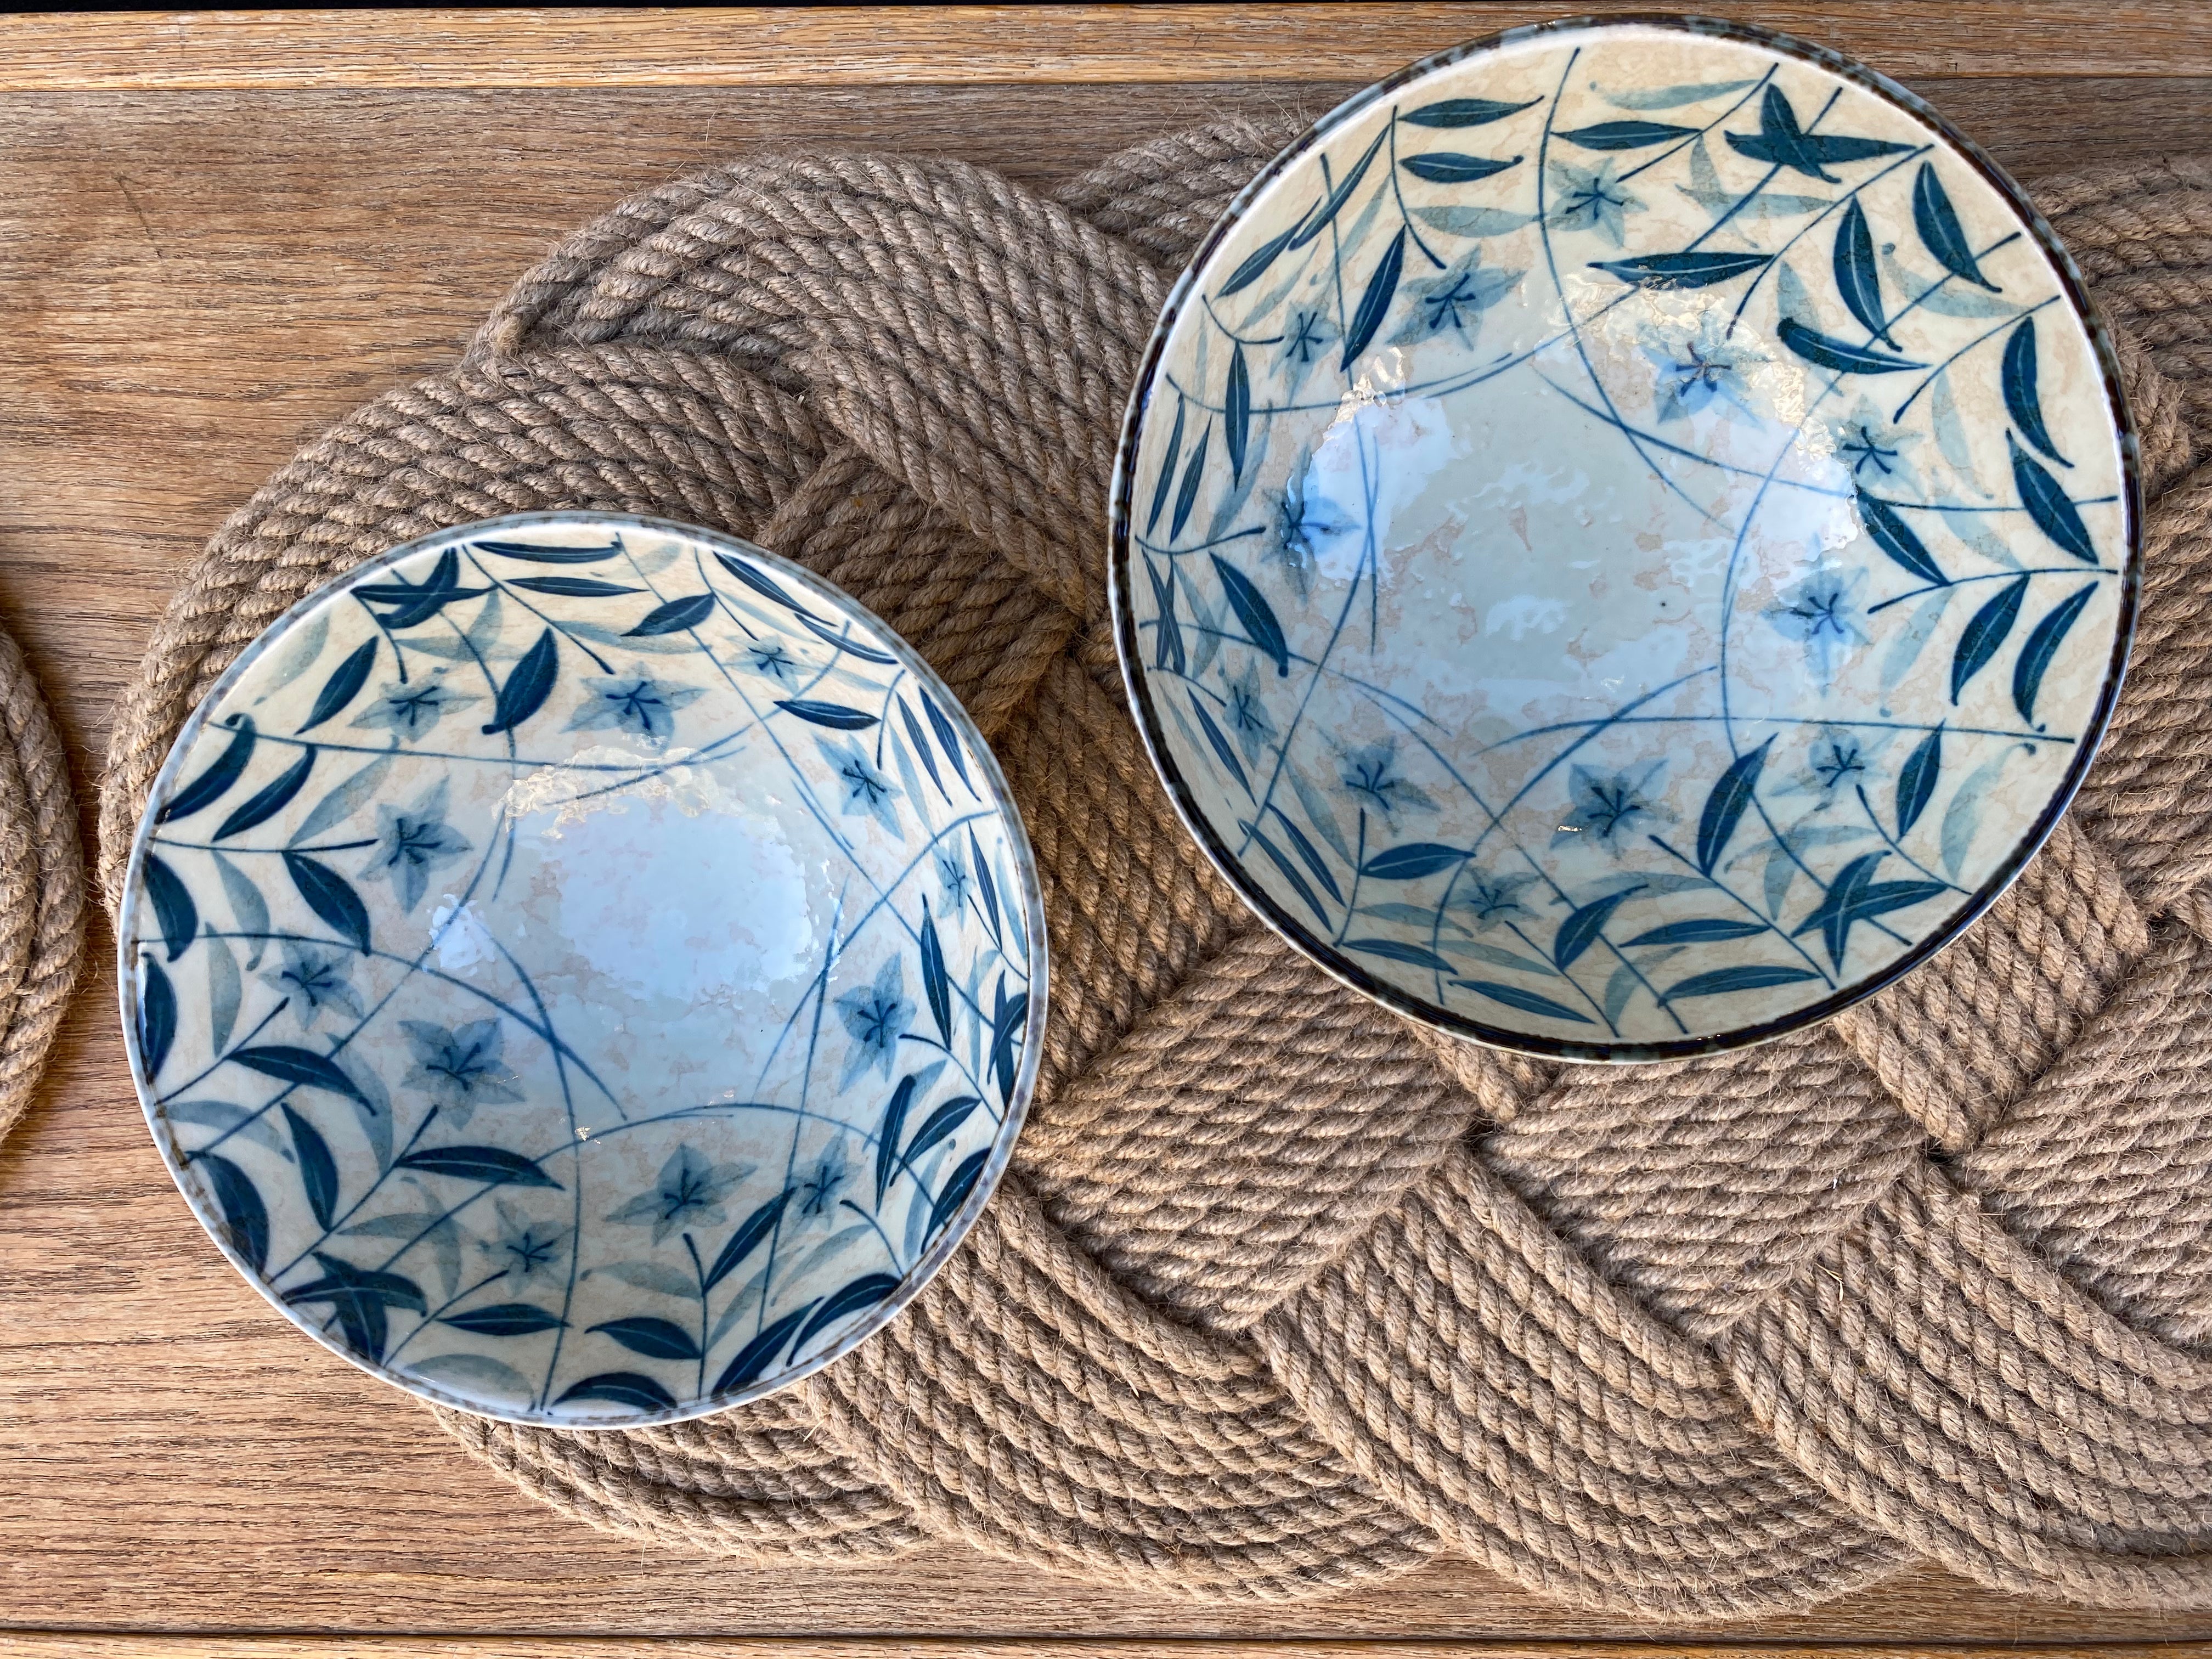 Noodle bowl with blue floral motif